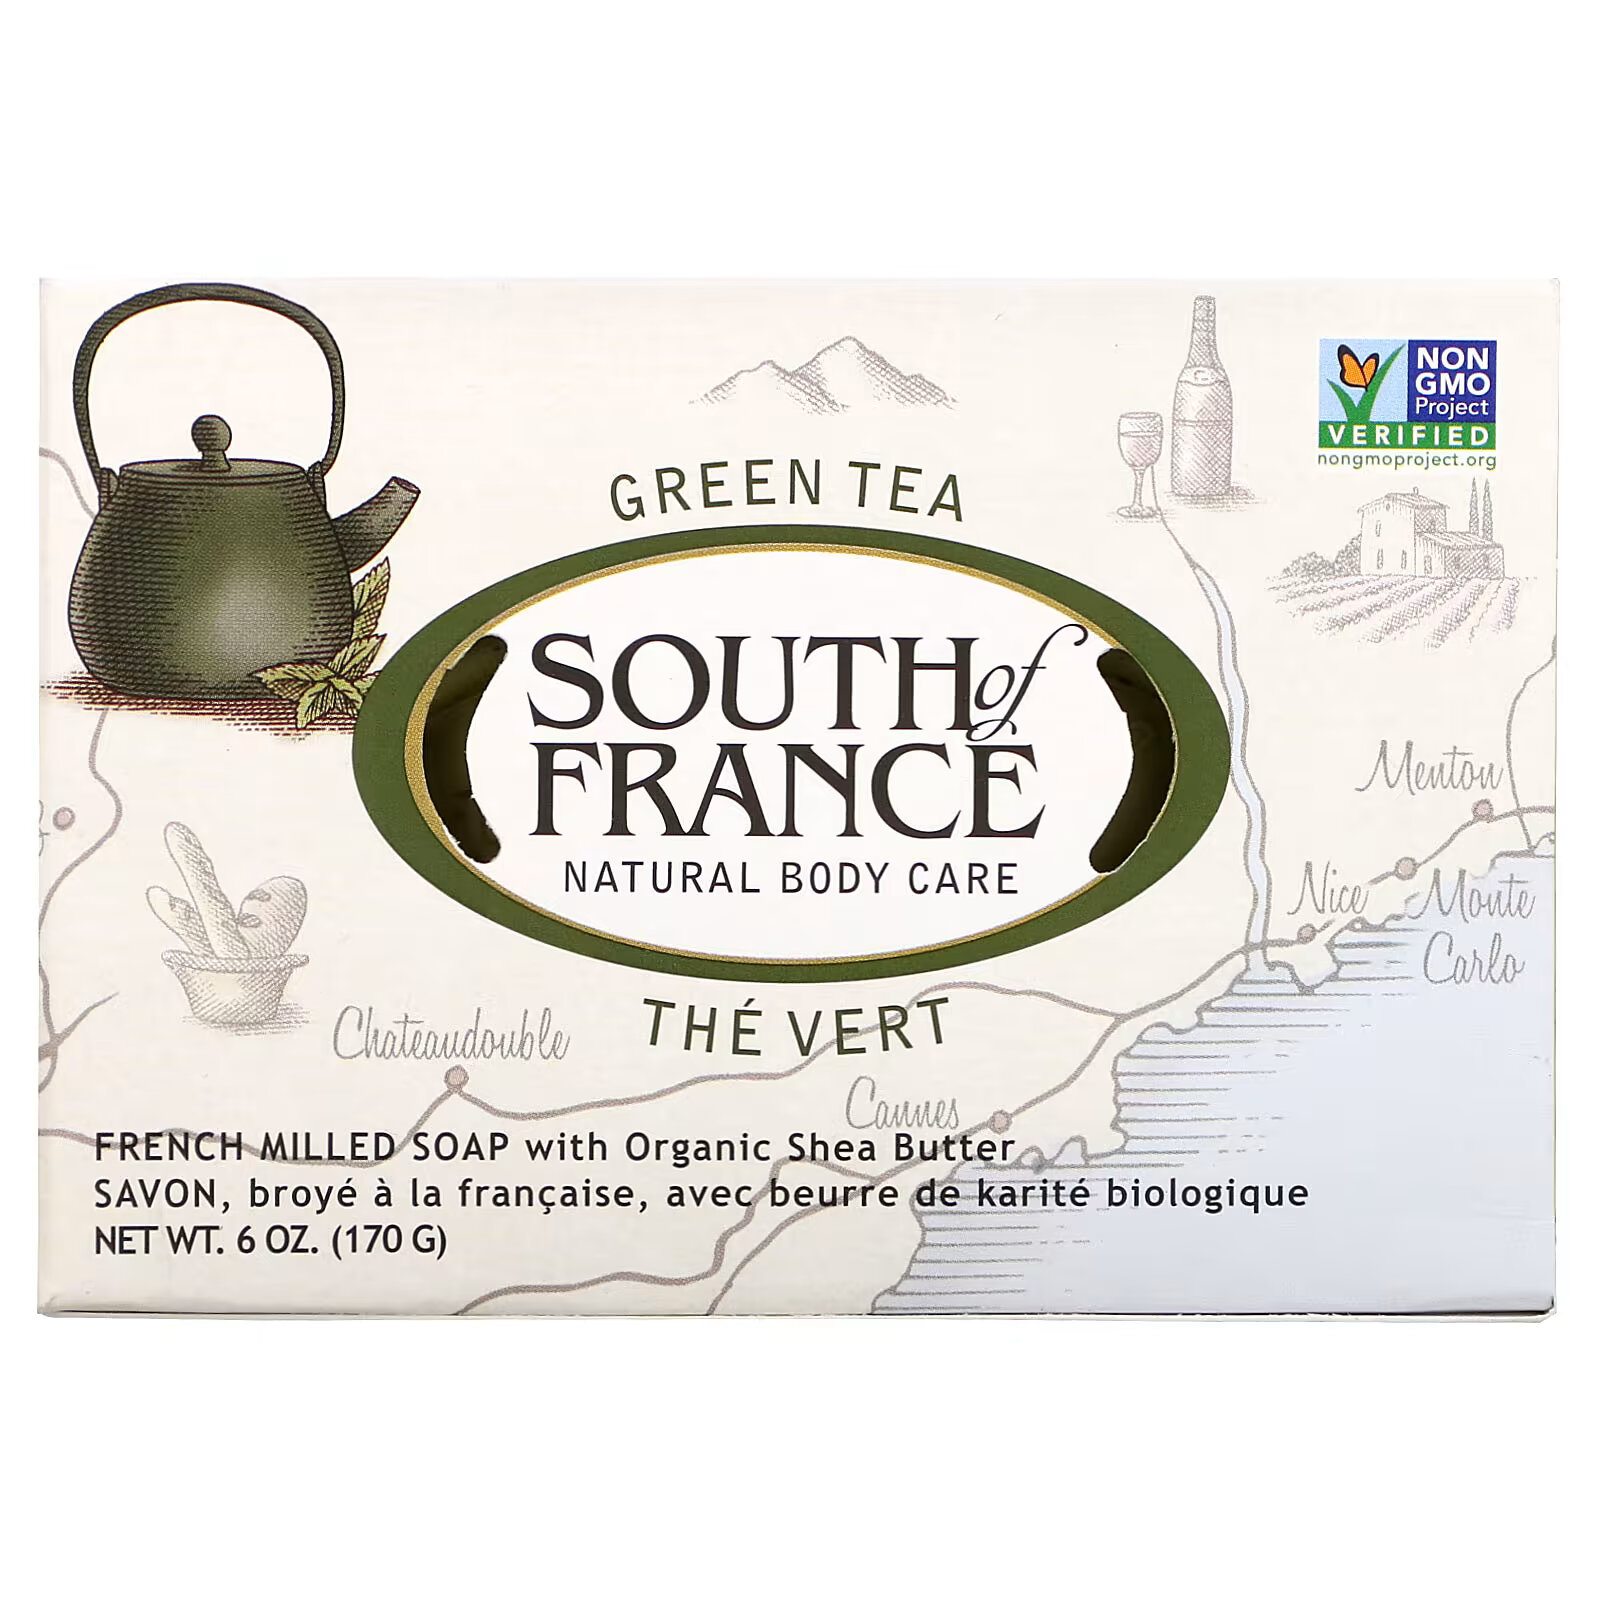 South of France, Green Tea, Кусковое мыло французского измельчения с органическим маслом ши, 6 унций (170 г) south of france лавандовое поле мыло с органическим маслом ши изготовленное по французскому рецепту 170 г 6 унций